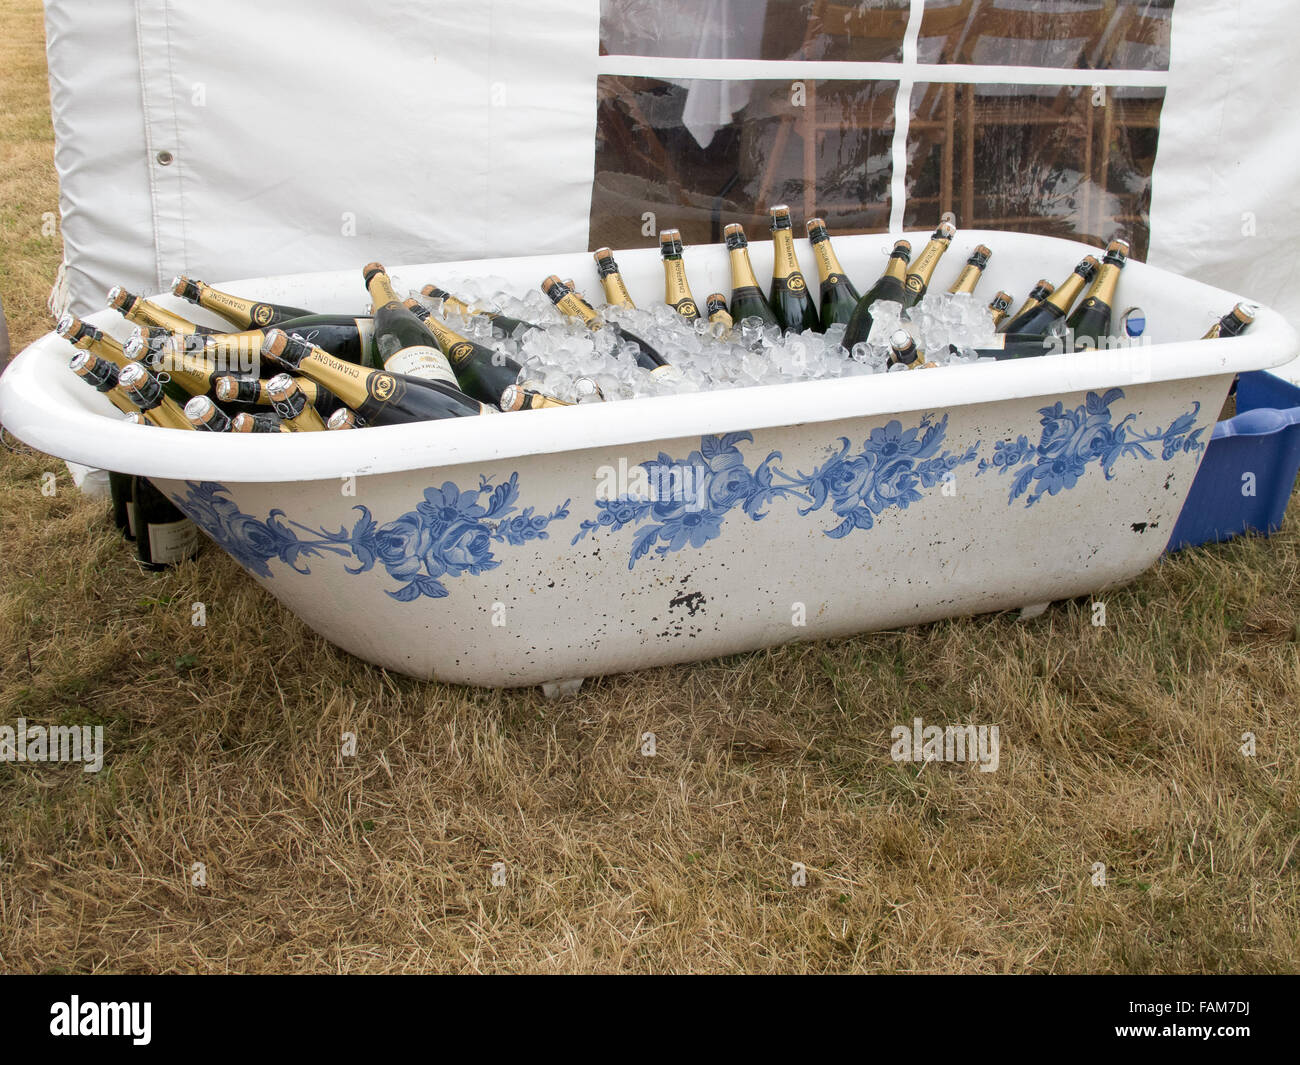 Bain de champagne Banque de photographies et d'images à haute résolution -  Alamy